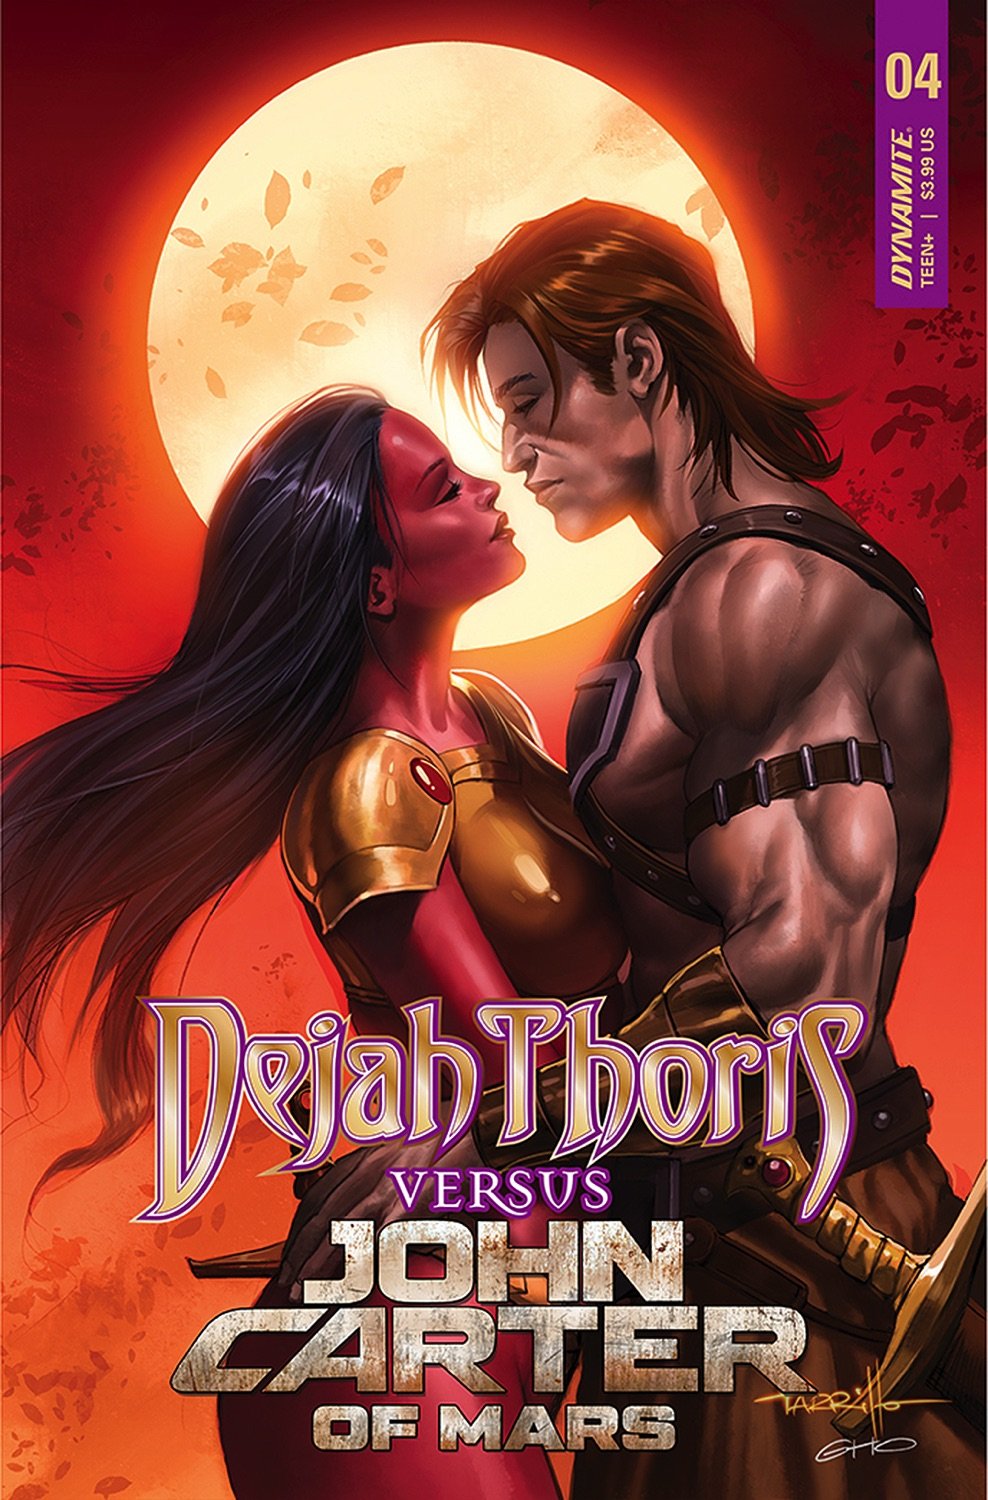 Dejah Thoris vs John Carter of Mars #4